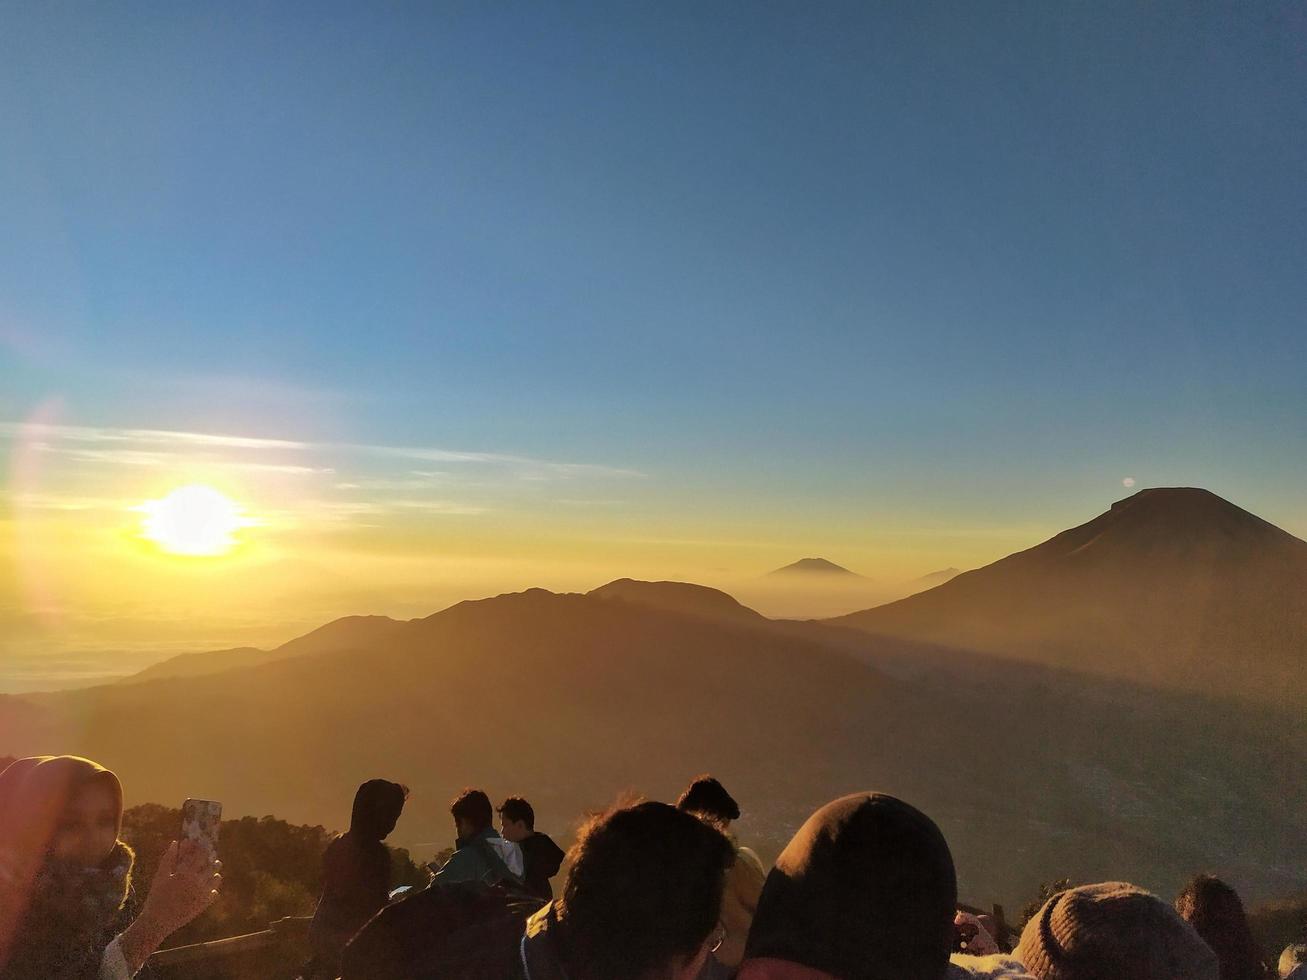 wonosobo, indonesien 31. august 2019. prau berg, die schöne silhouette des sonnenaufgangs und der blick auf den berg, menschen am morgen foto